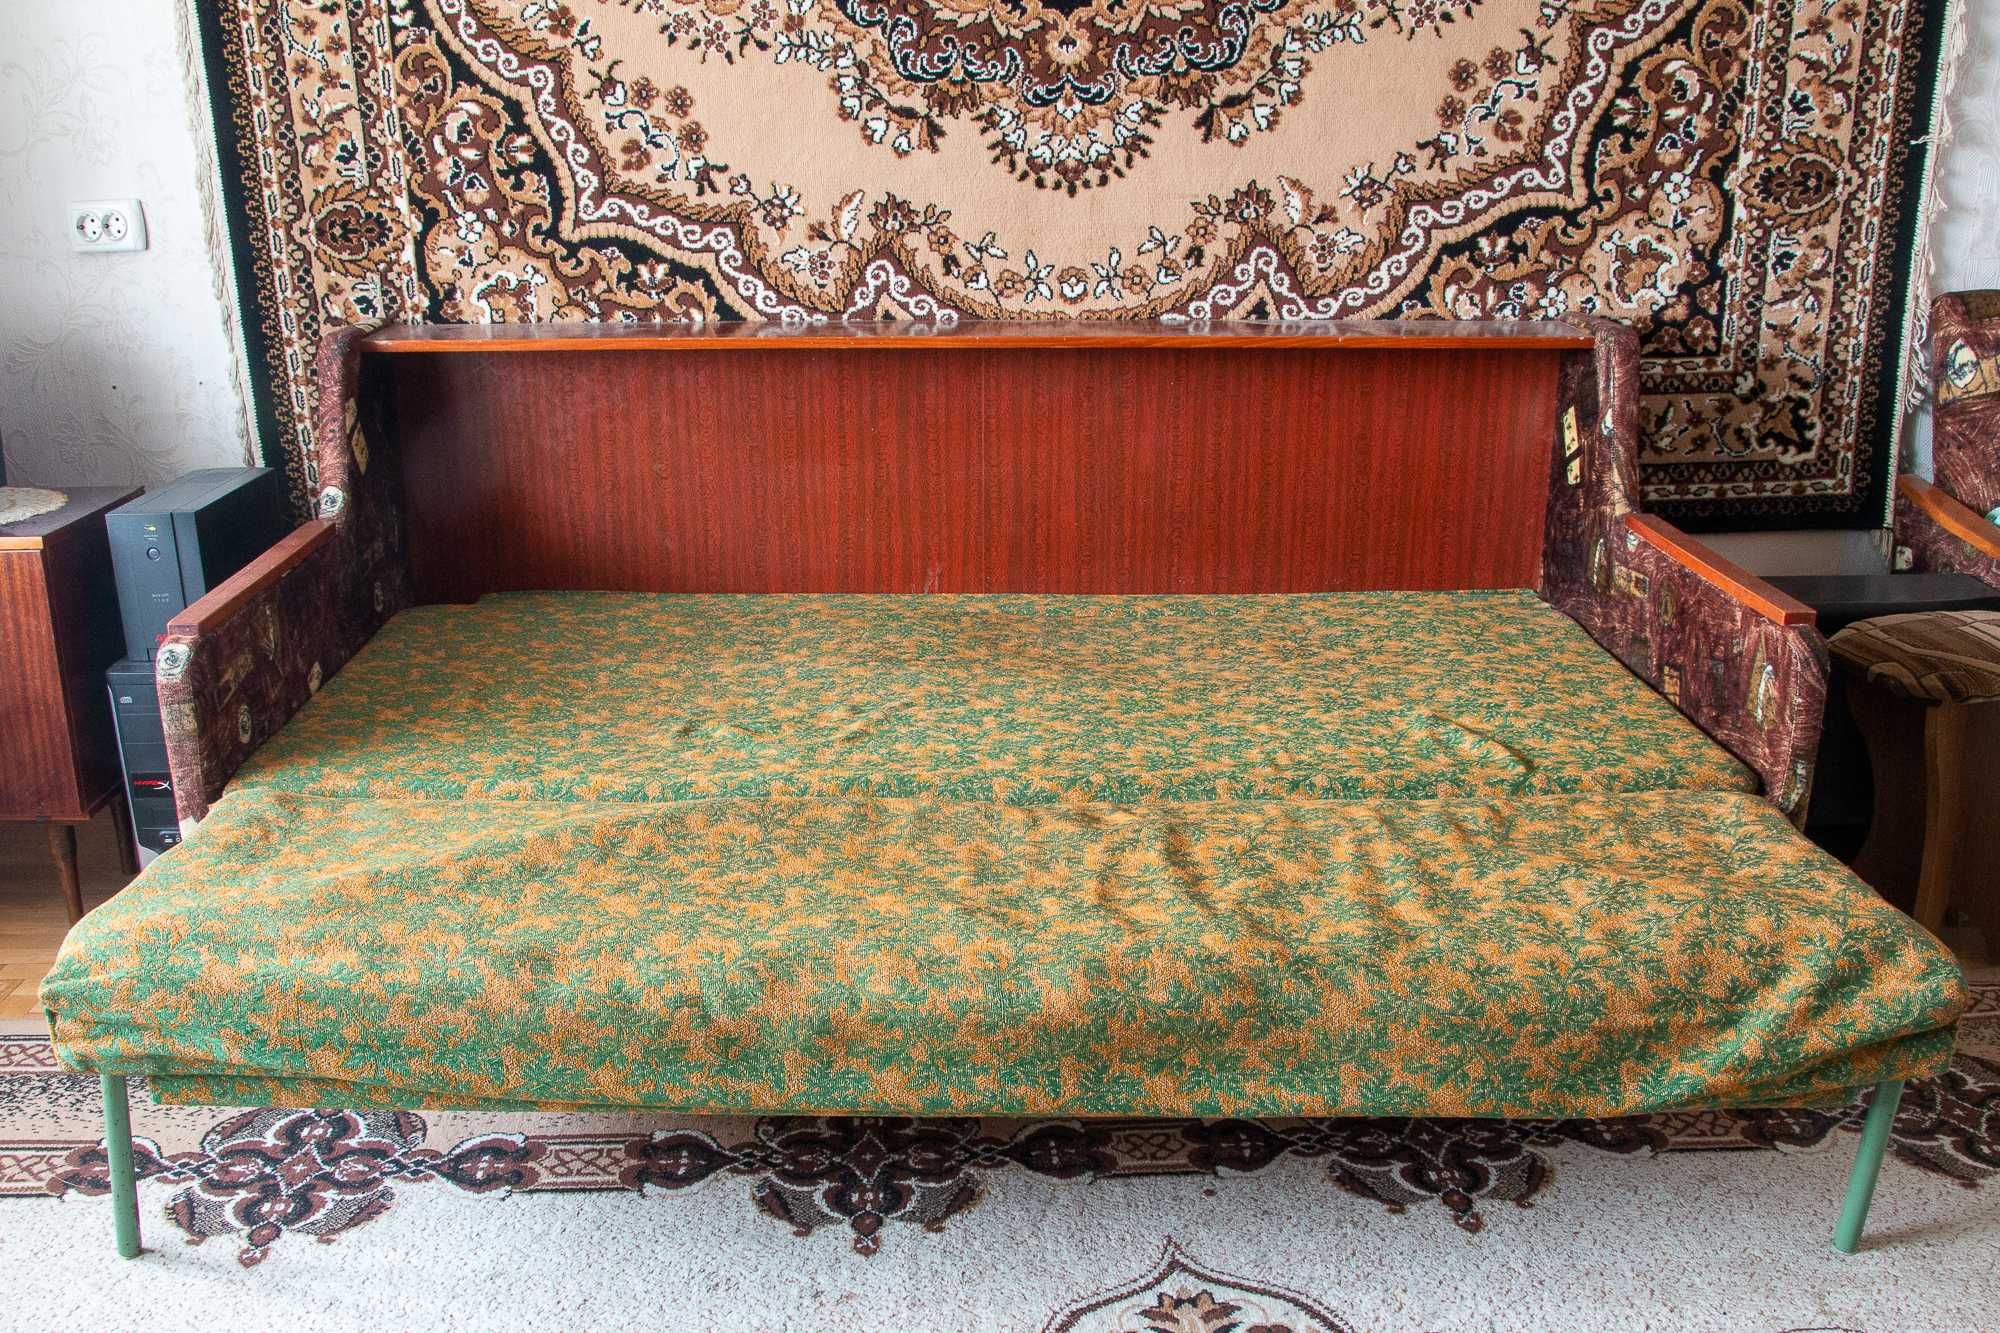 Розкладне диван-ліжко Д225 (САМОВИВІЗ)